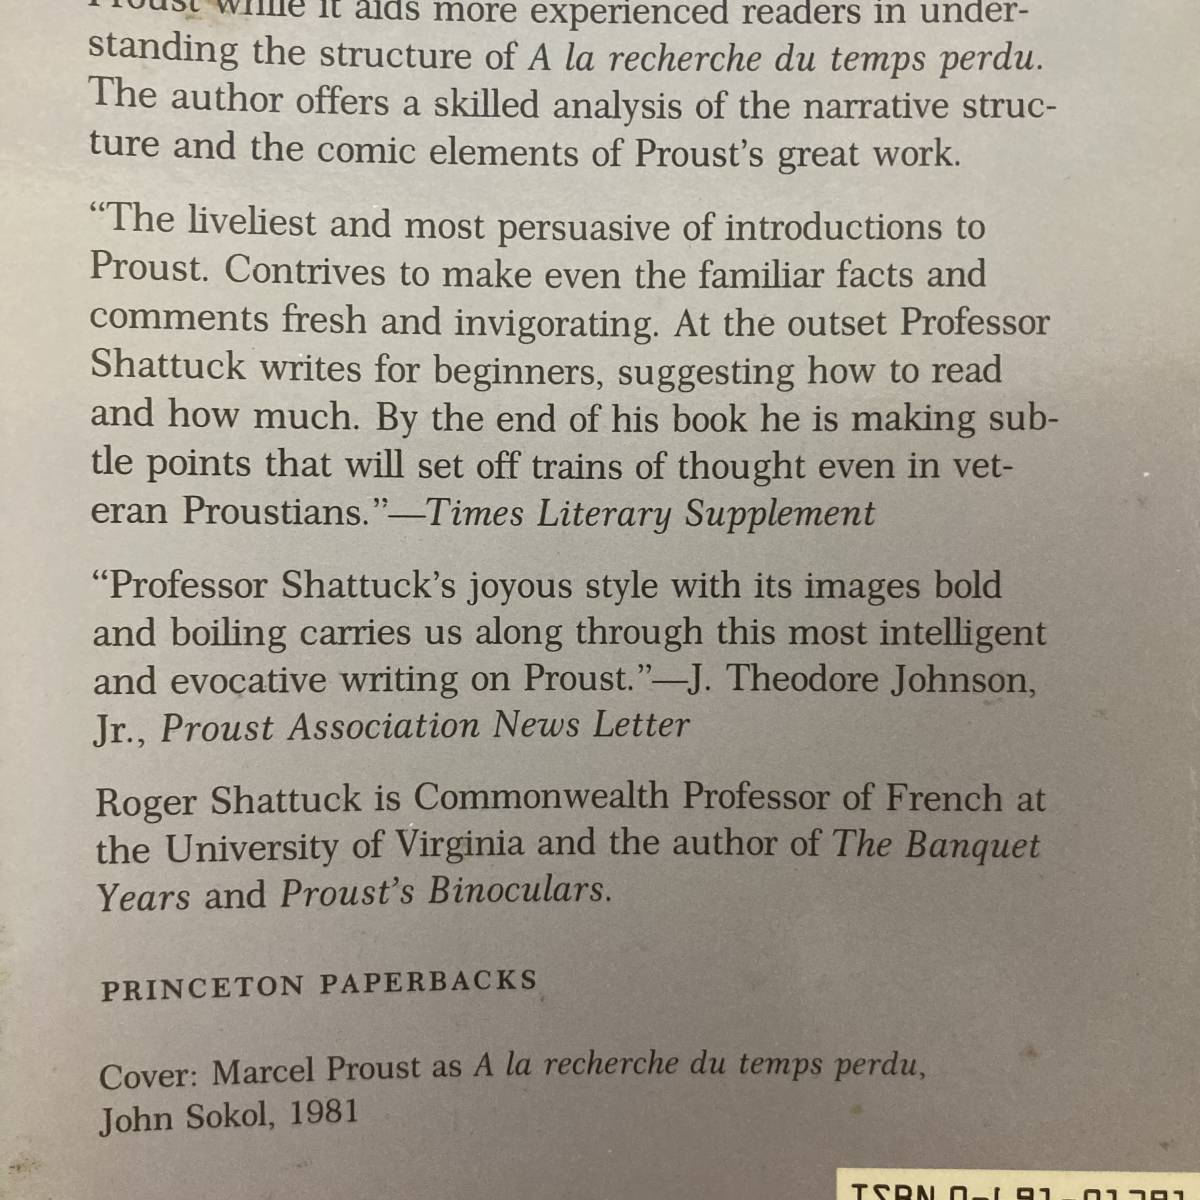 【英語洋書】Marcel Proust / Roger Shattuck（著）【マルセル・プルースト】_画像3